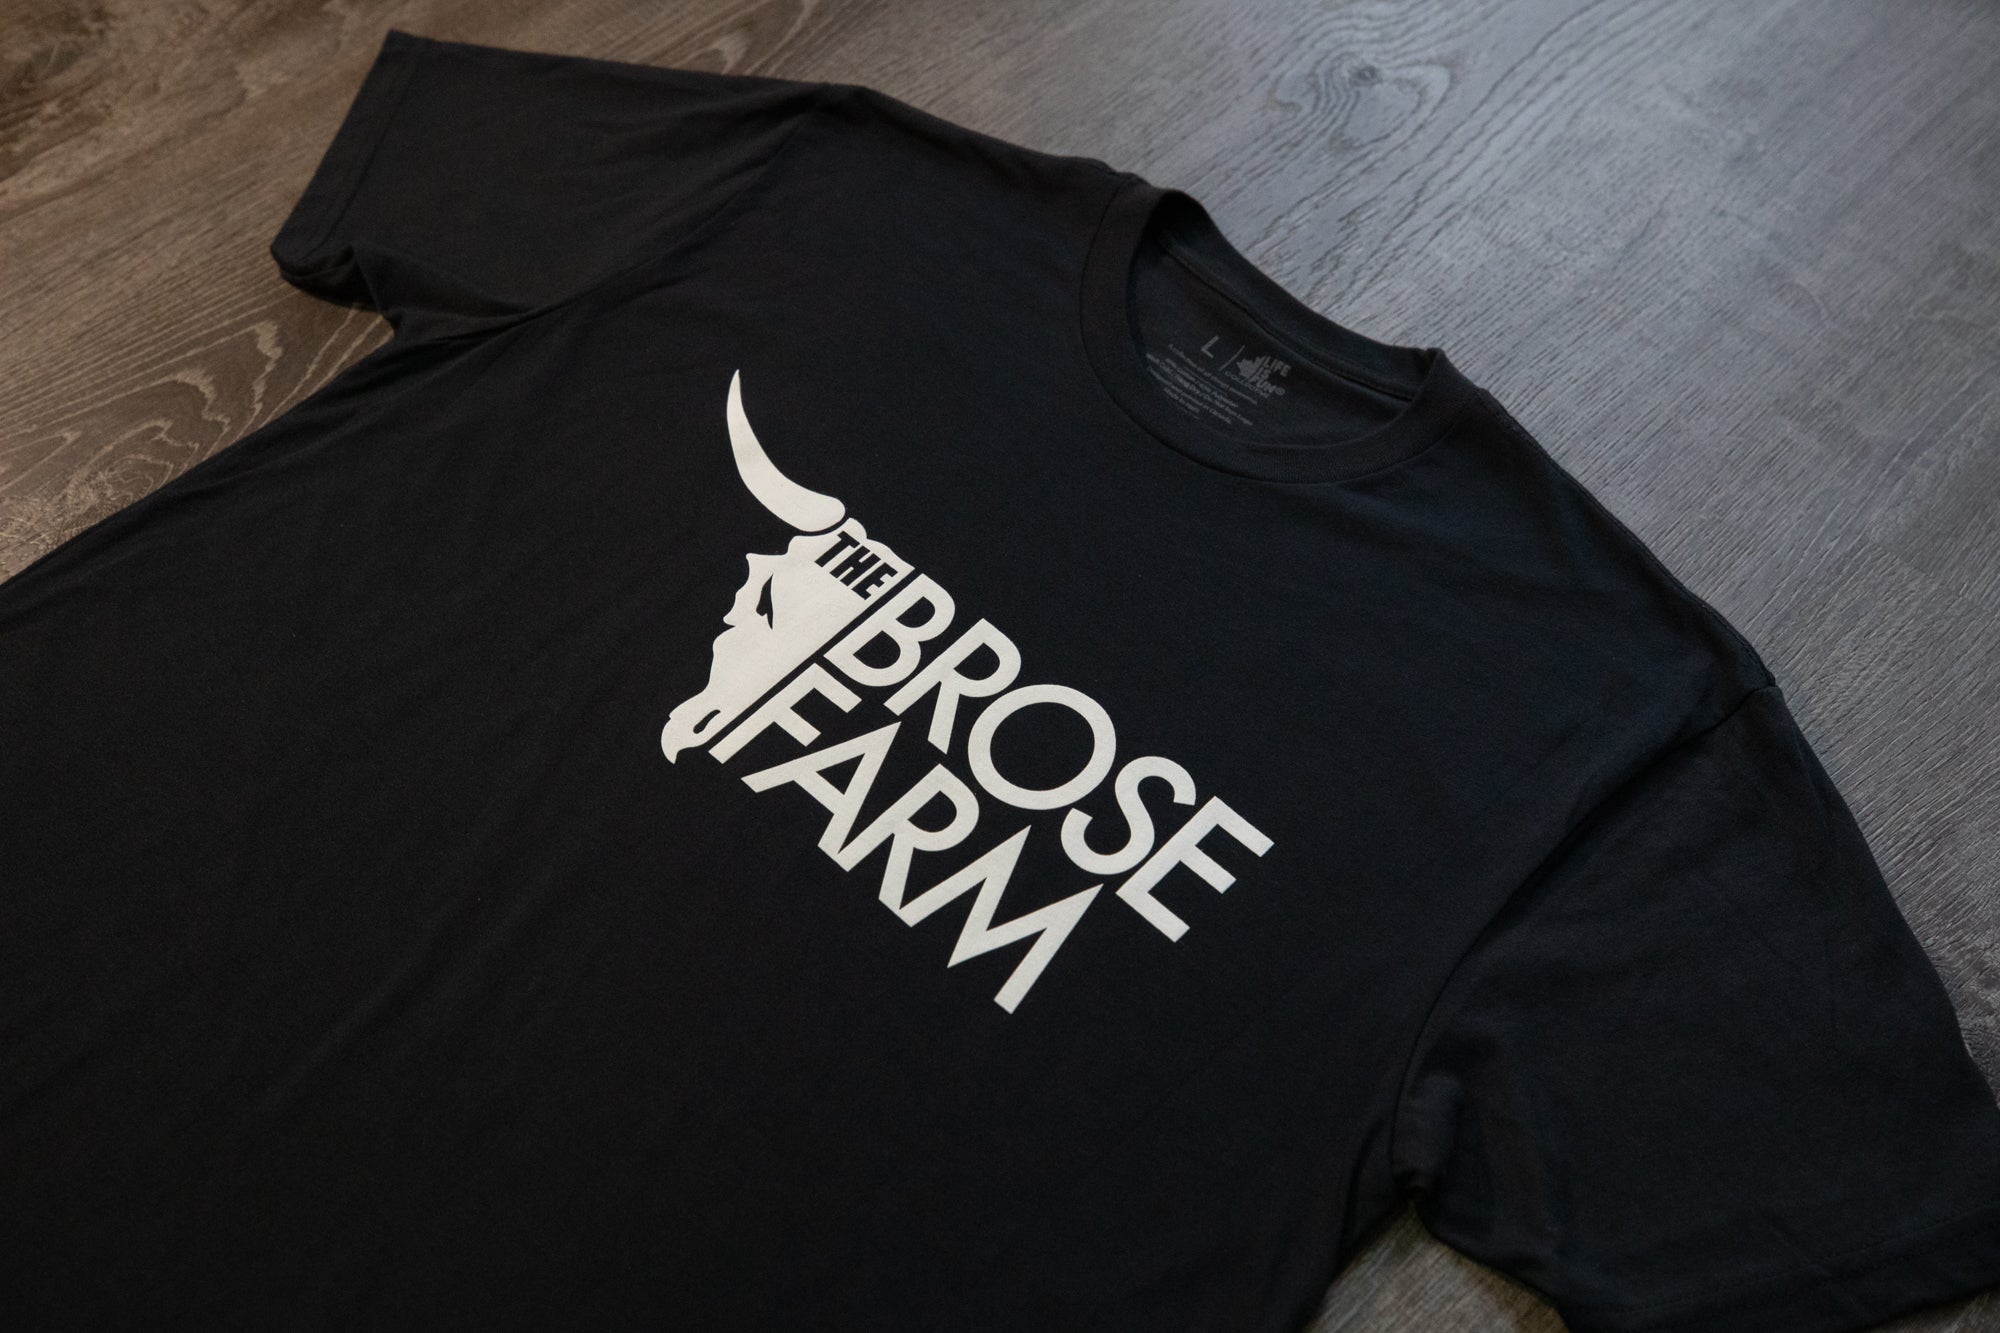 Brose Farm T-shirt // Black